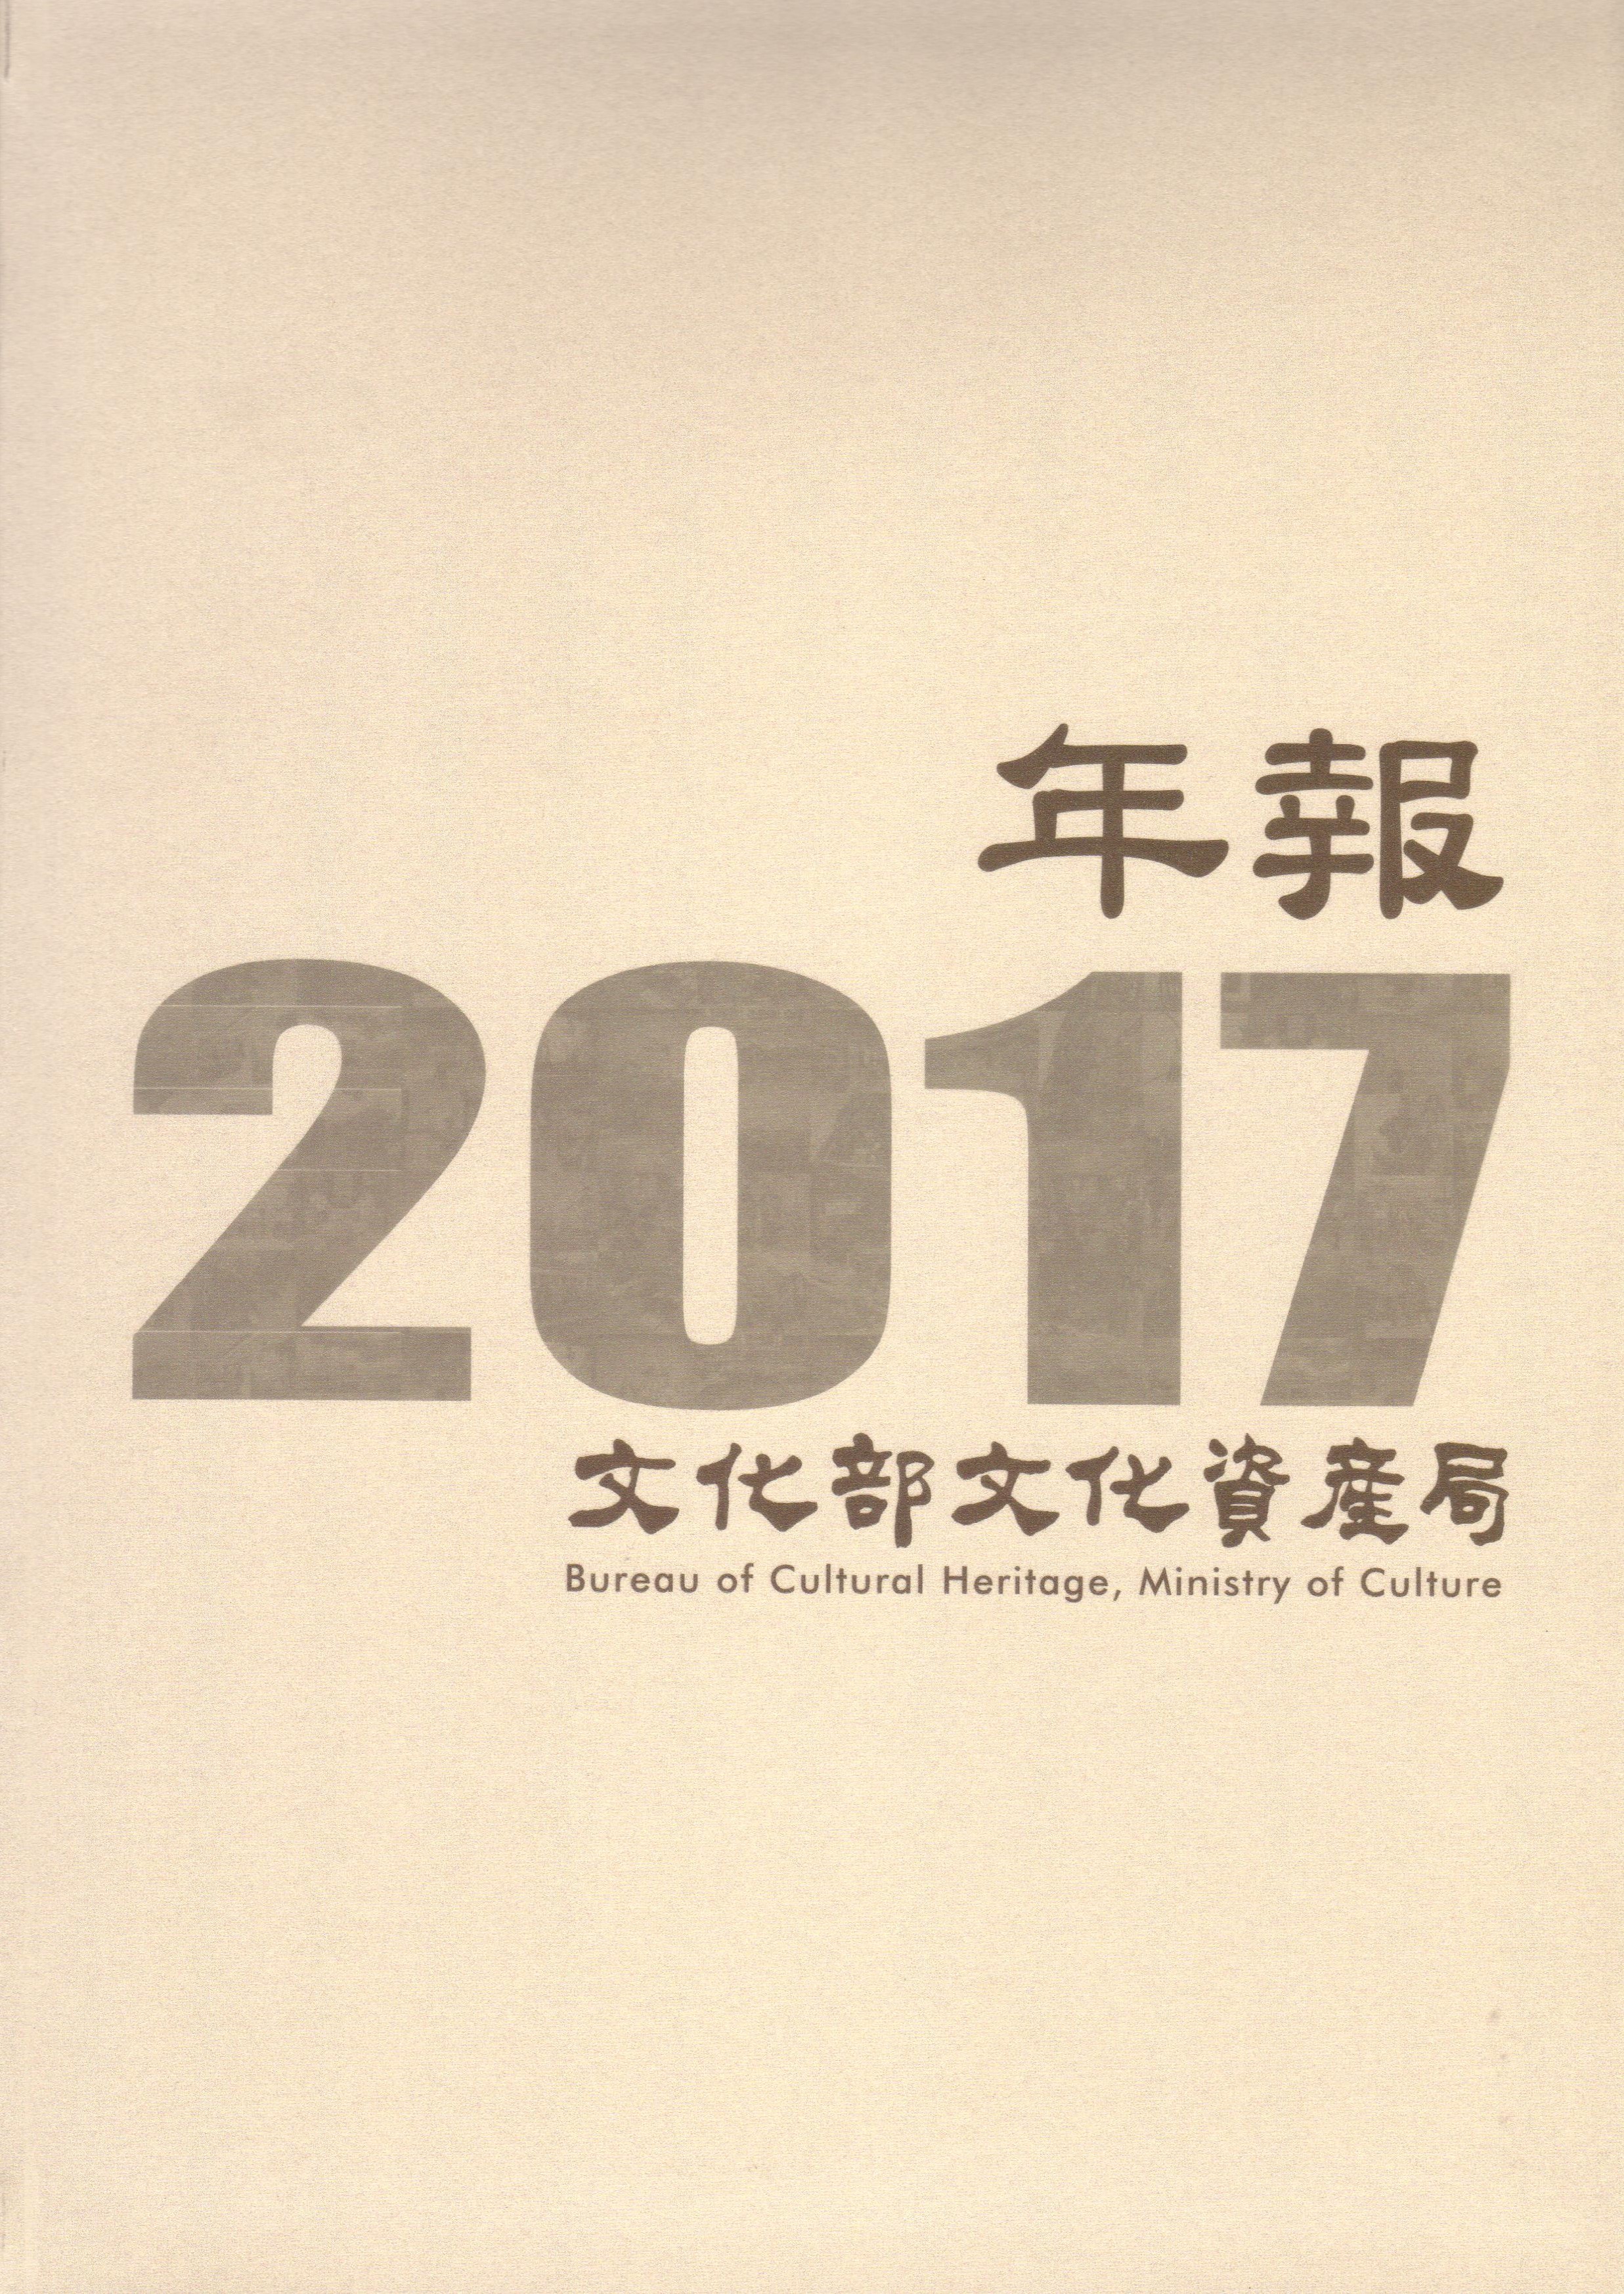 文化部文化資產局年報. 2017 